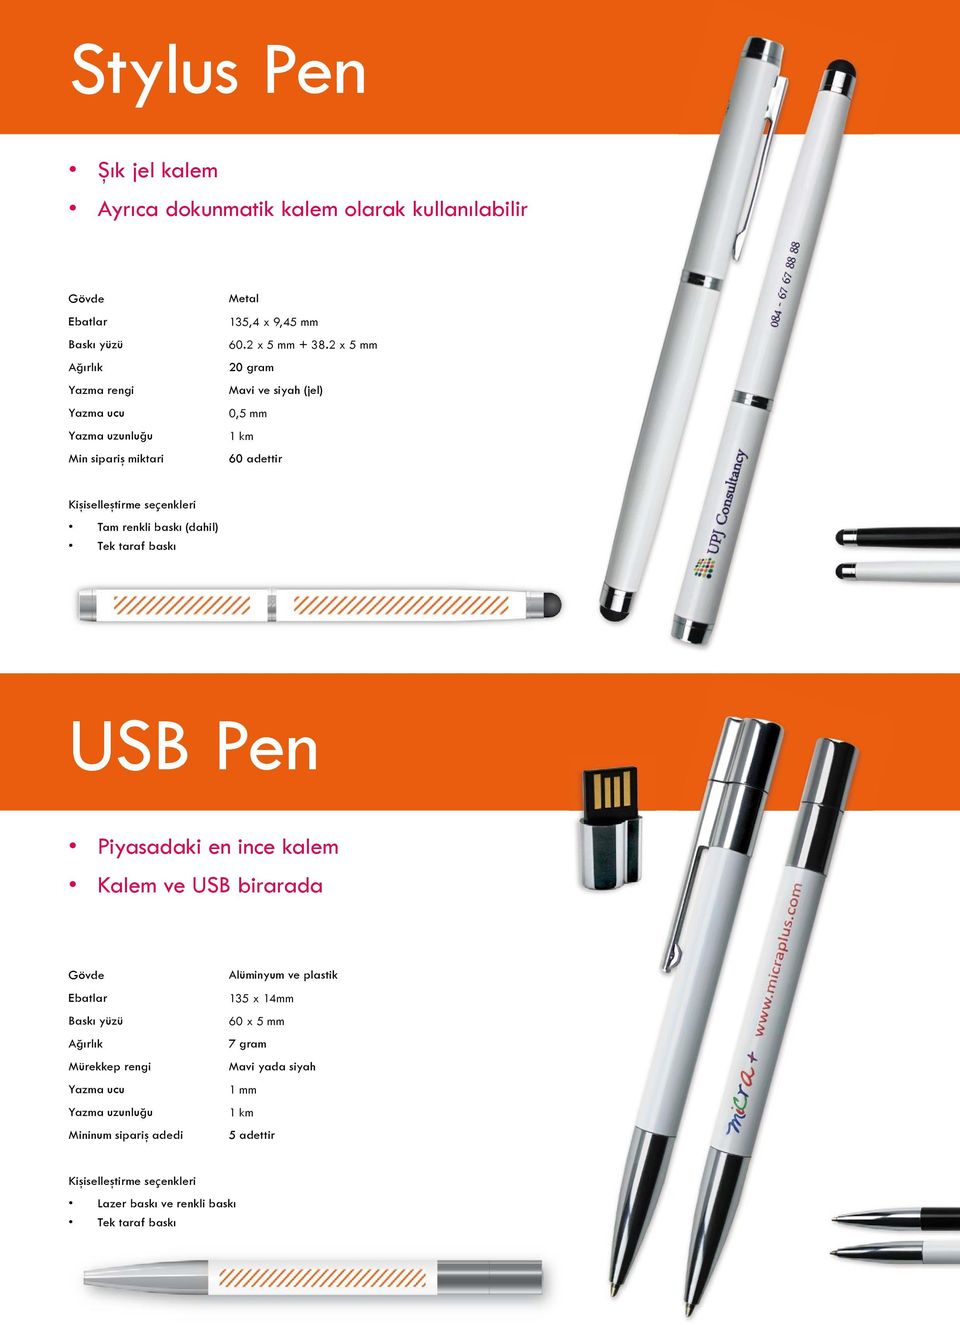 2 x 5 mm 20 gram Mavi ve siyah (jel) 0,5 mm 1 km 60 adettir Kişiselleştirme seçenkleri Tam renkli baskı (dahil) Tek taraf baskı USB Pen Piyasadaki en